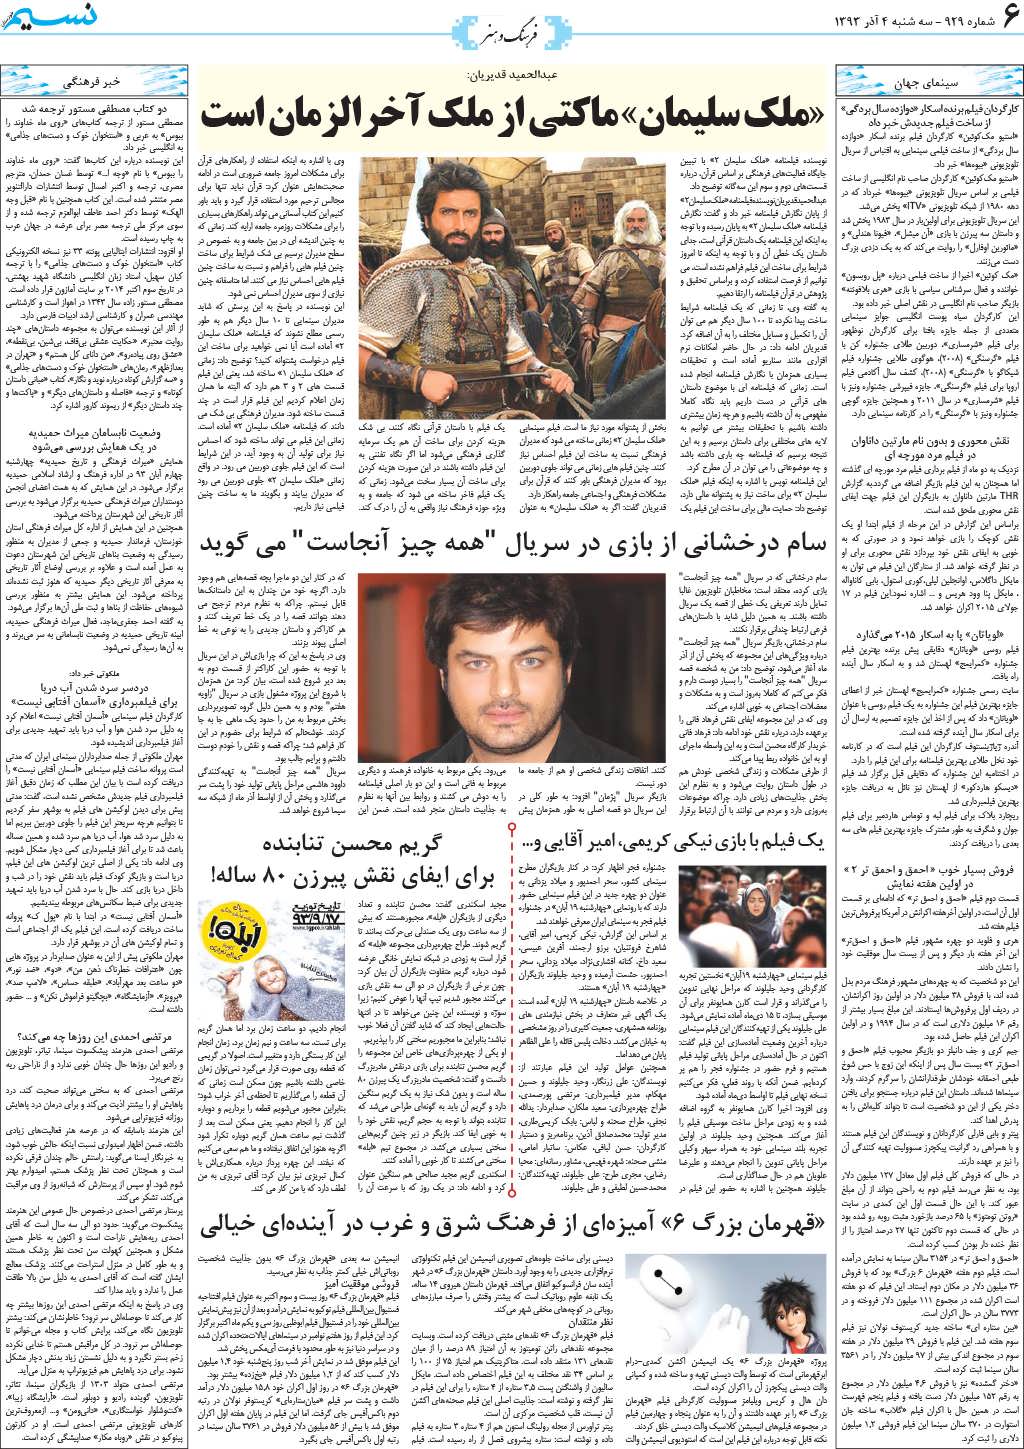 صفحه فرهنگ و هنر روزنامه نسیم شماره 929